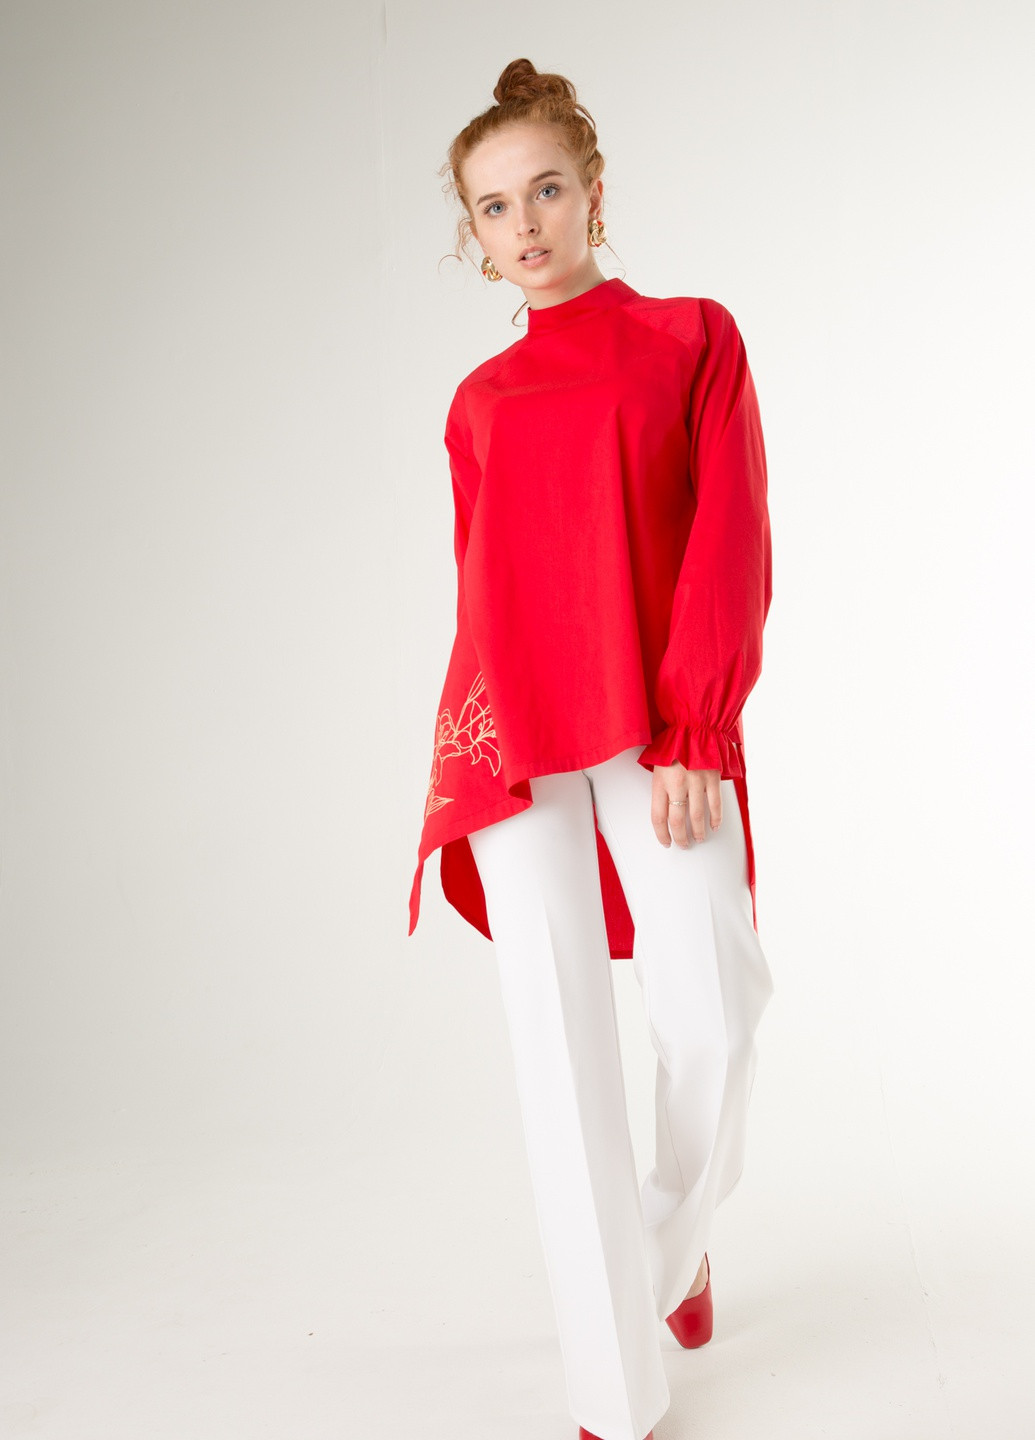 Красная демисезонная ассиметричная красная блуза с золотой вышивкой: "лилия" INNOE Ассиметричная блуза